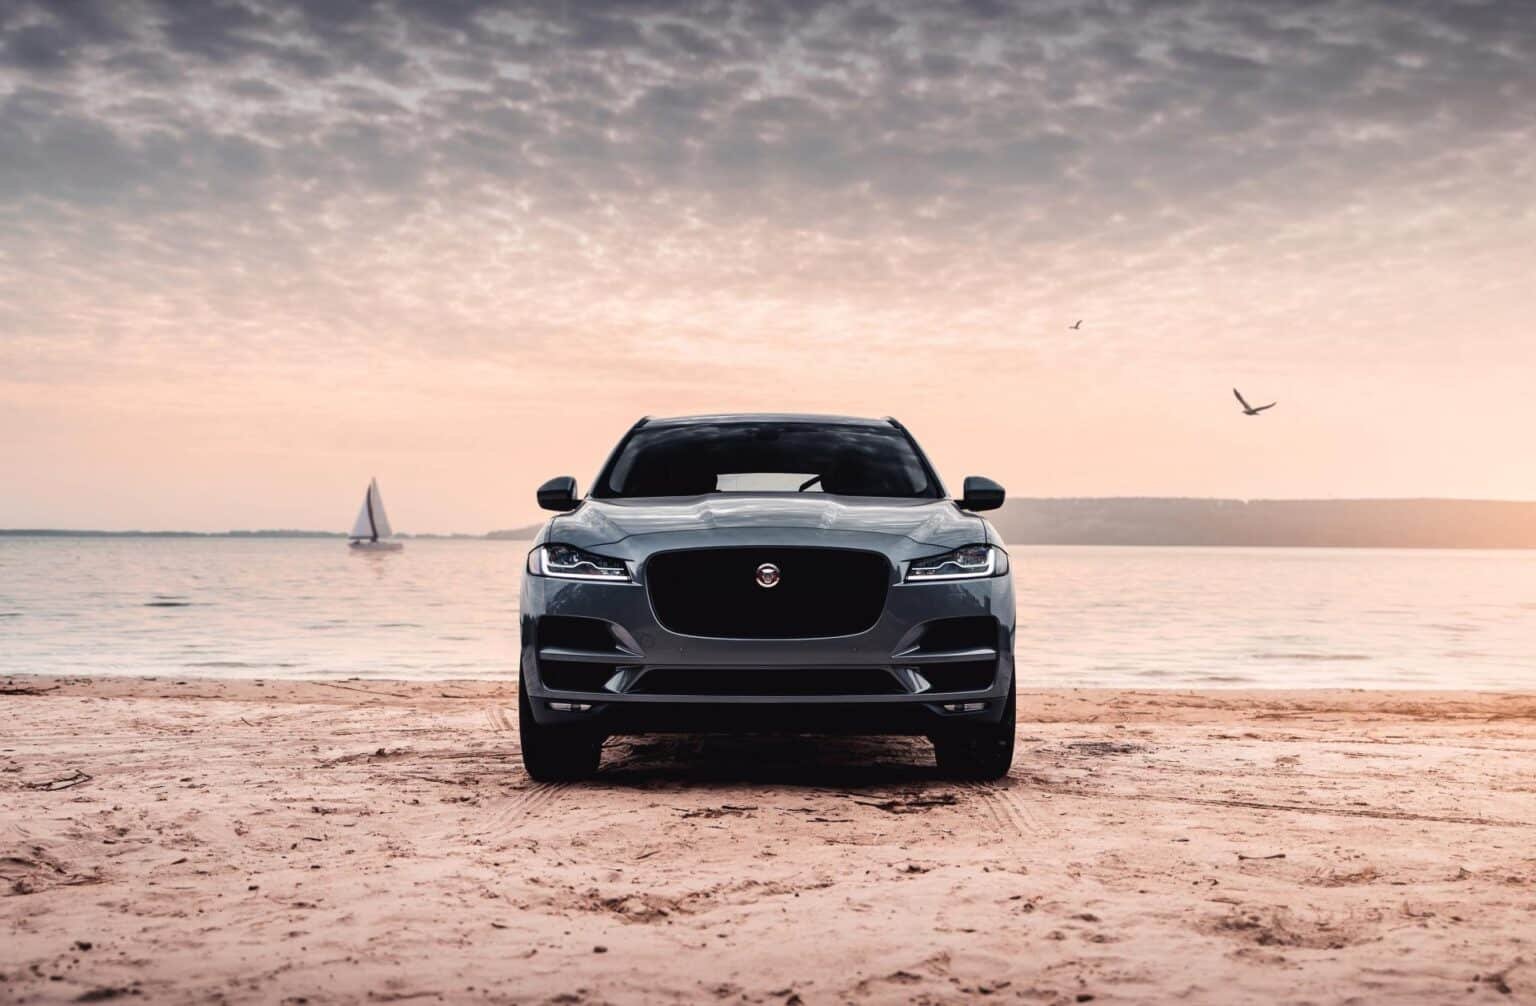 Jaguar's Elektro-Neustart mit Milliarden-Invest